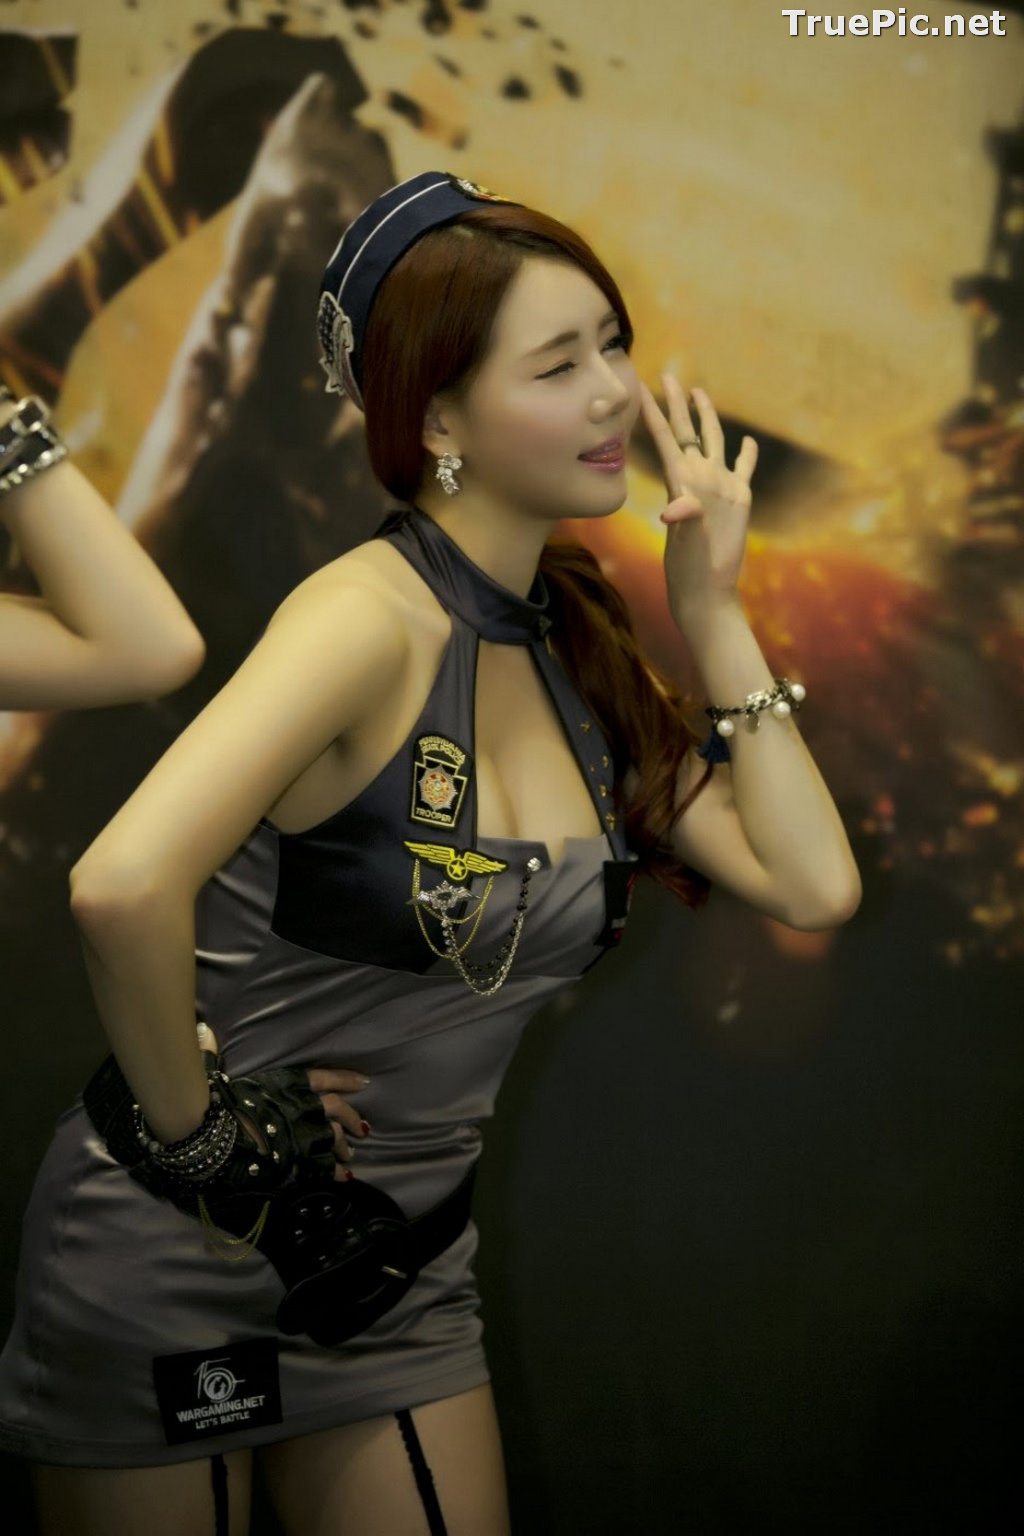 Image Best Beautiful Images Of Korean Racing Queen Han Ga Eun #1 - TruePic.net - Picture-20